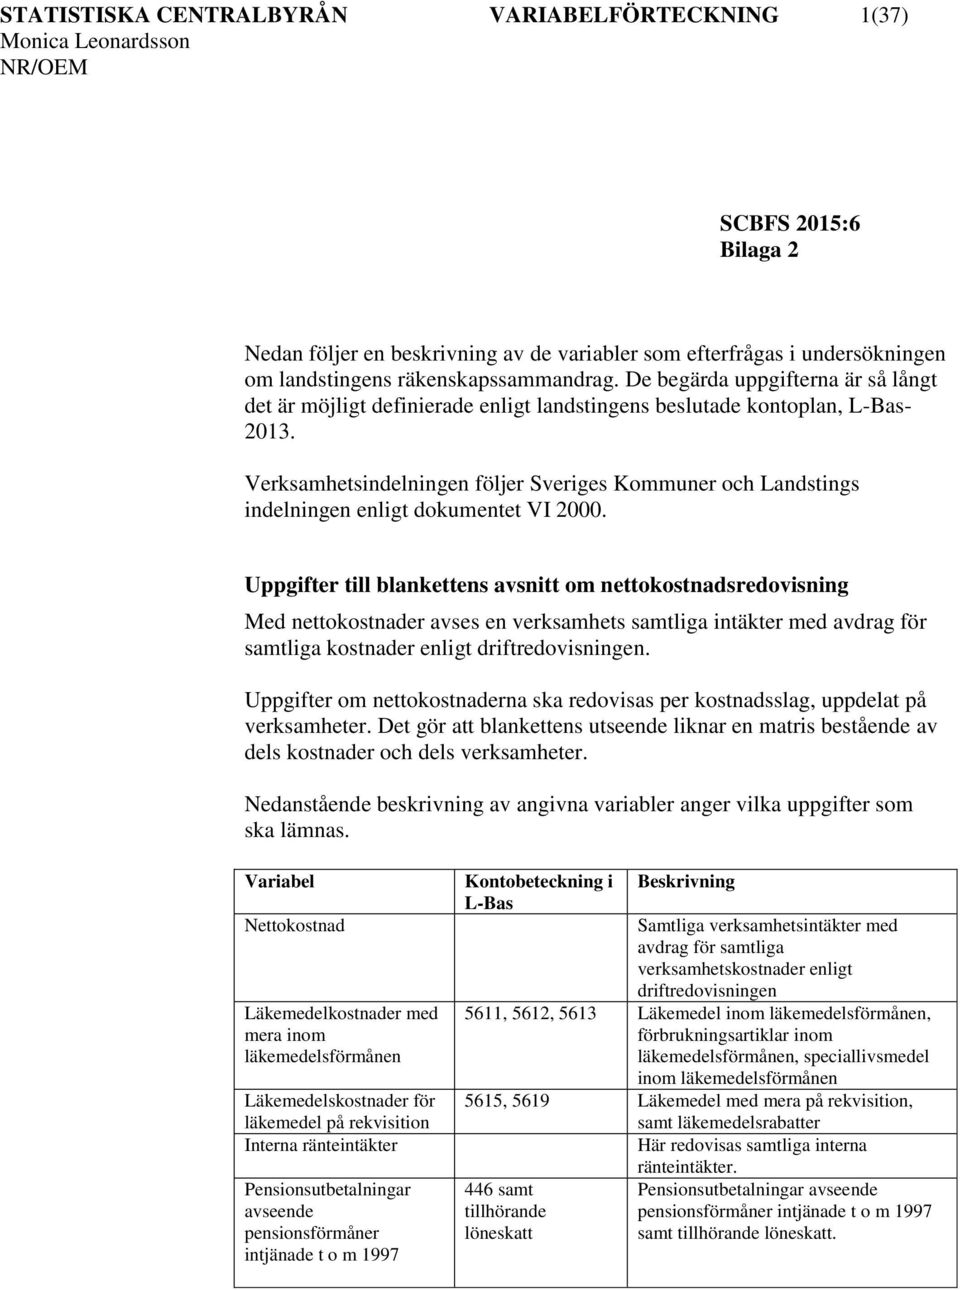 Verksamhetsindelningen följer Sveriges Kommuner och Landstings indelningen enligt dokumentet VI 2000.